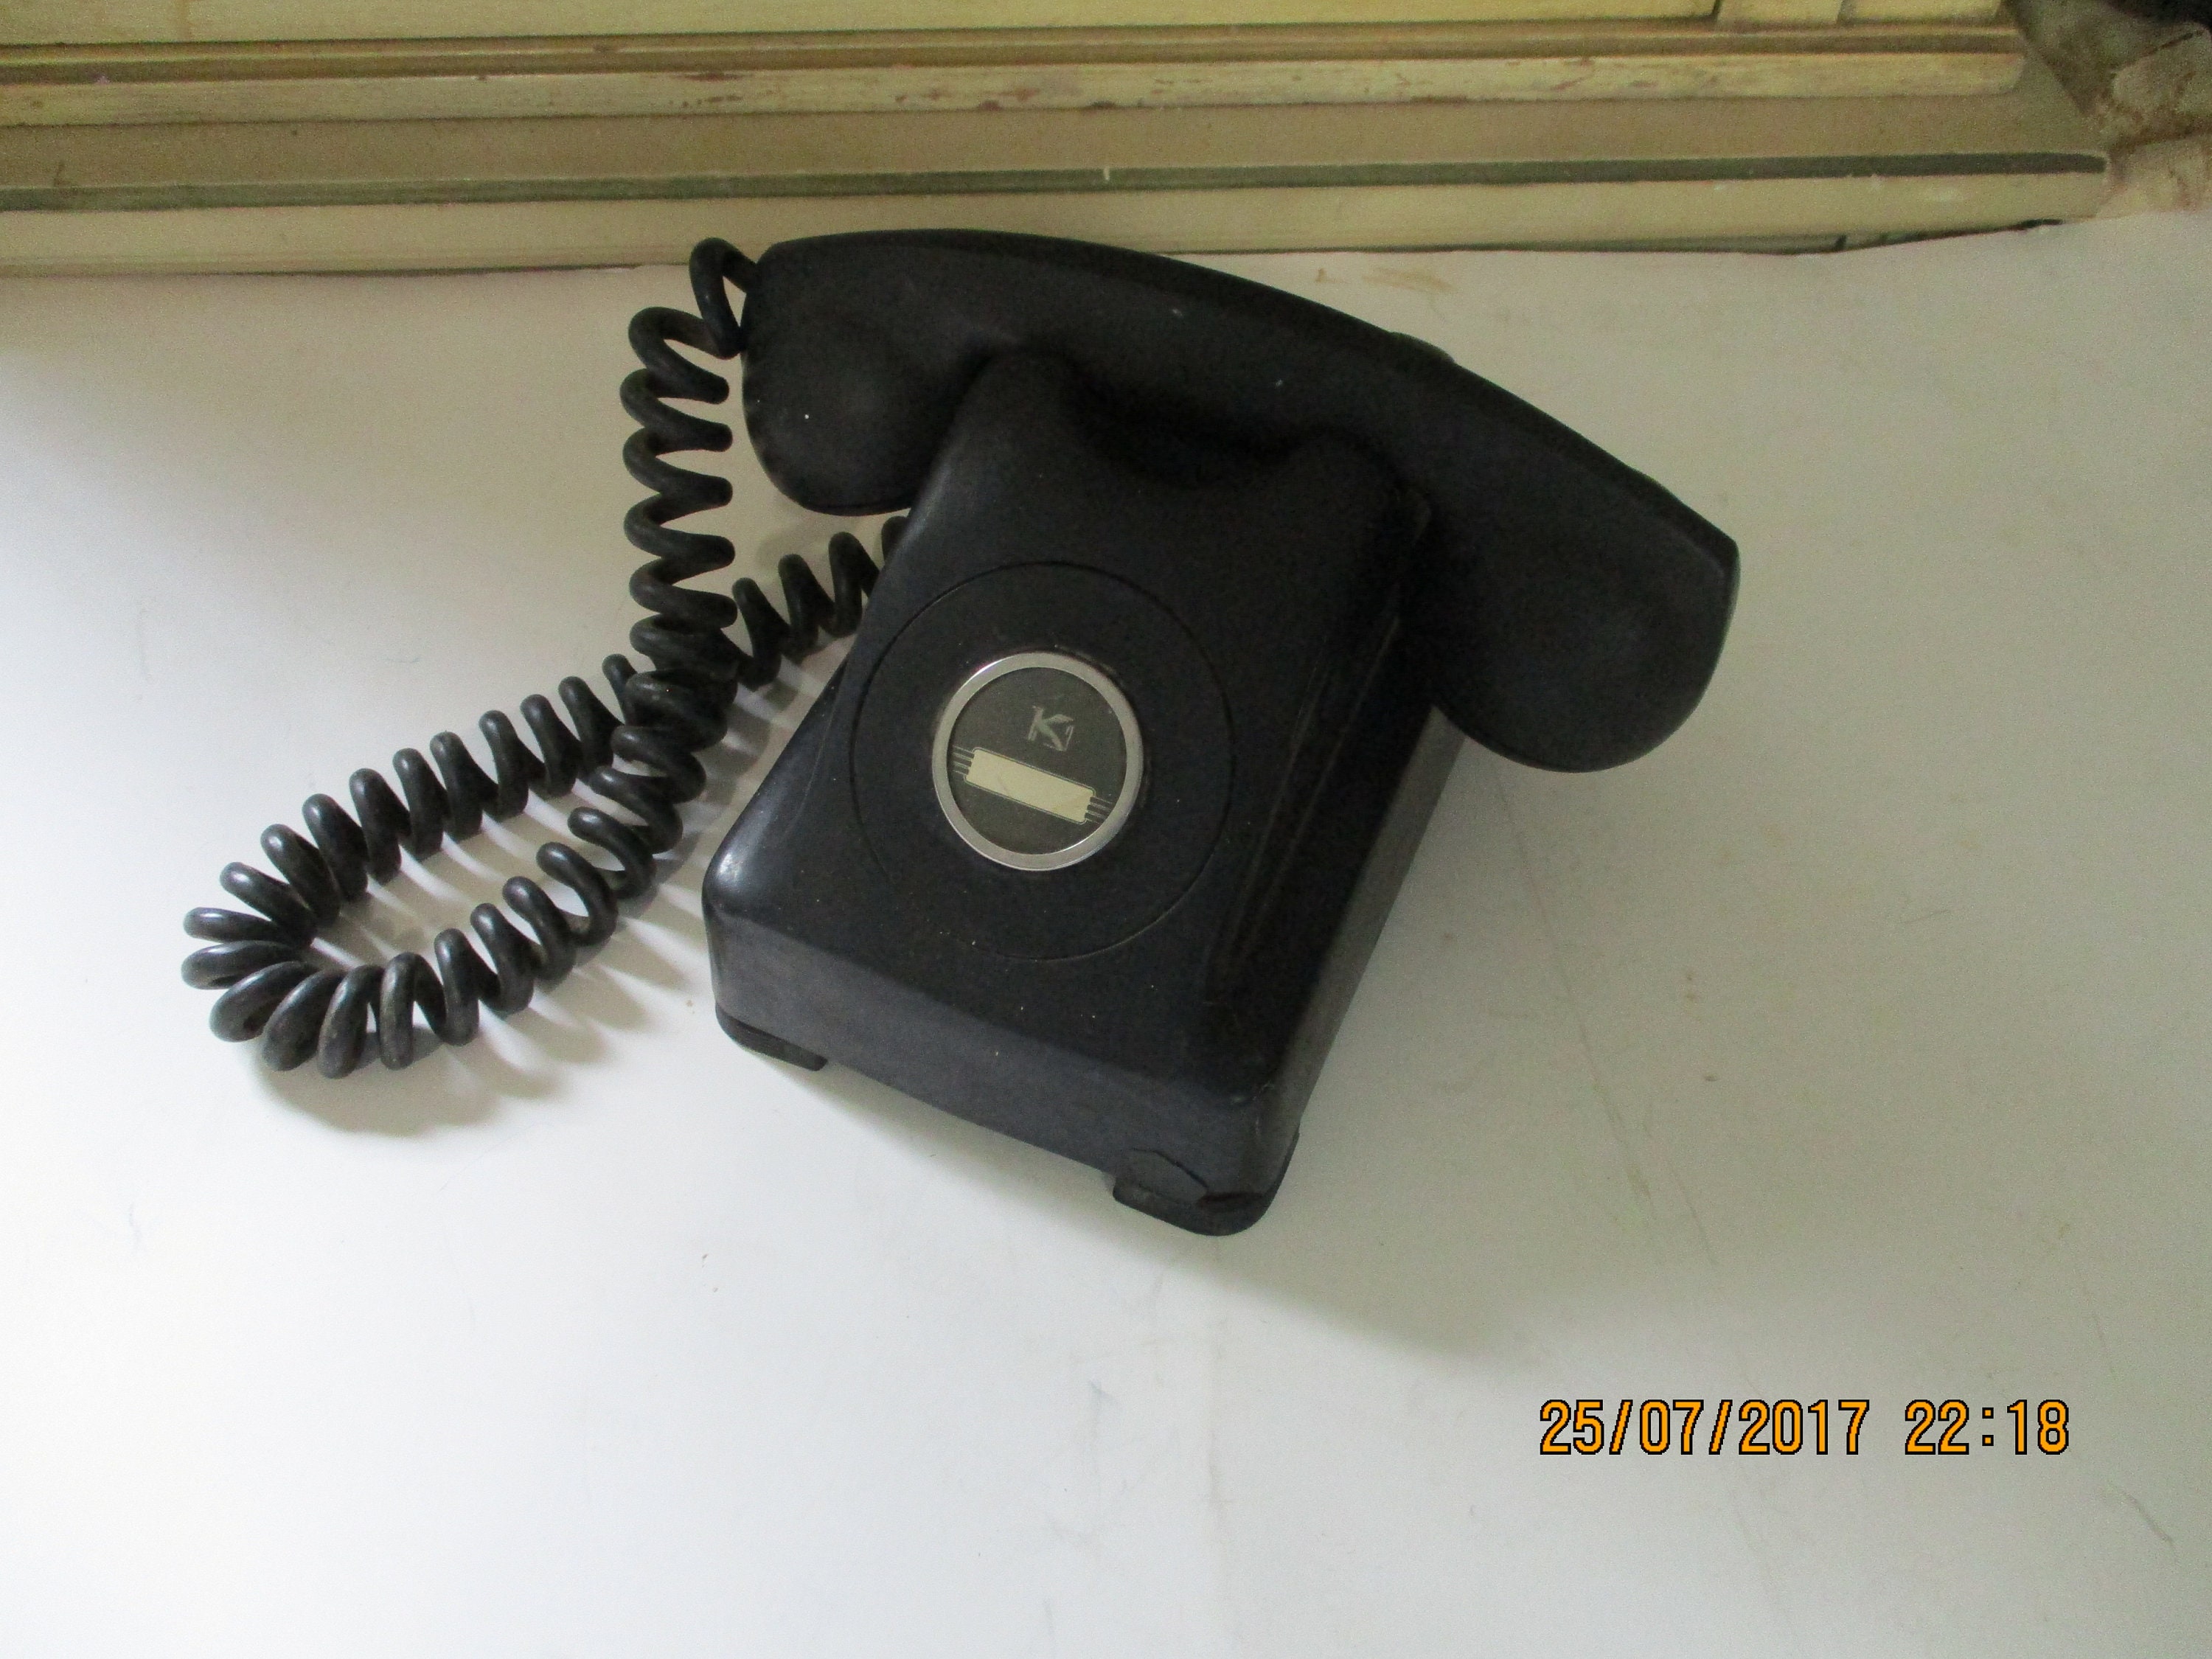 Téléphone fixe vintage kaki - Label Emmaüs